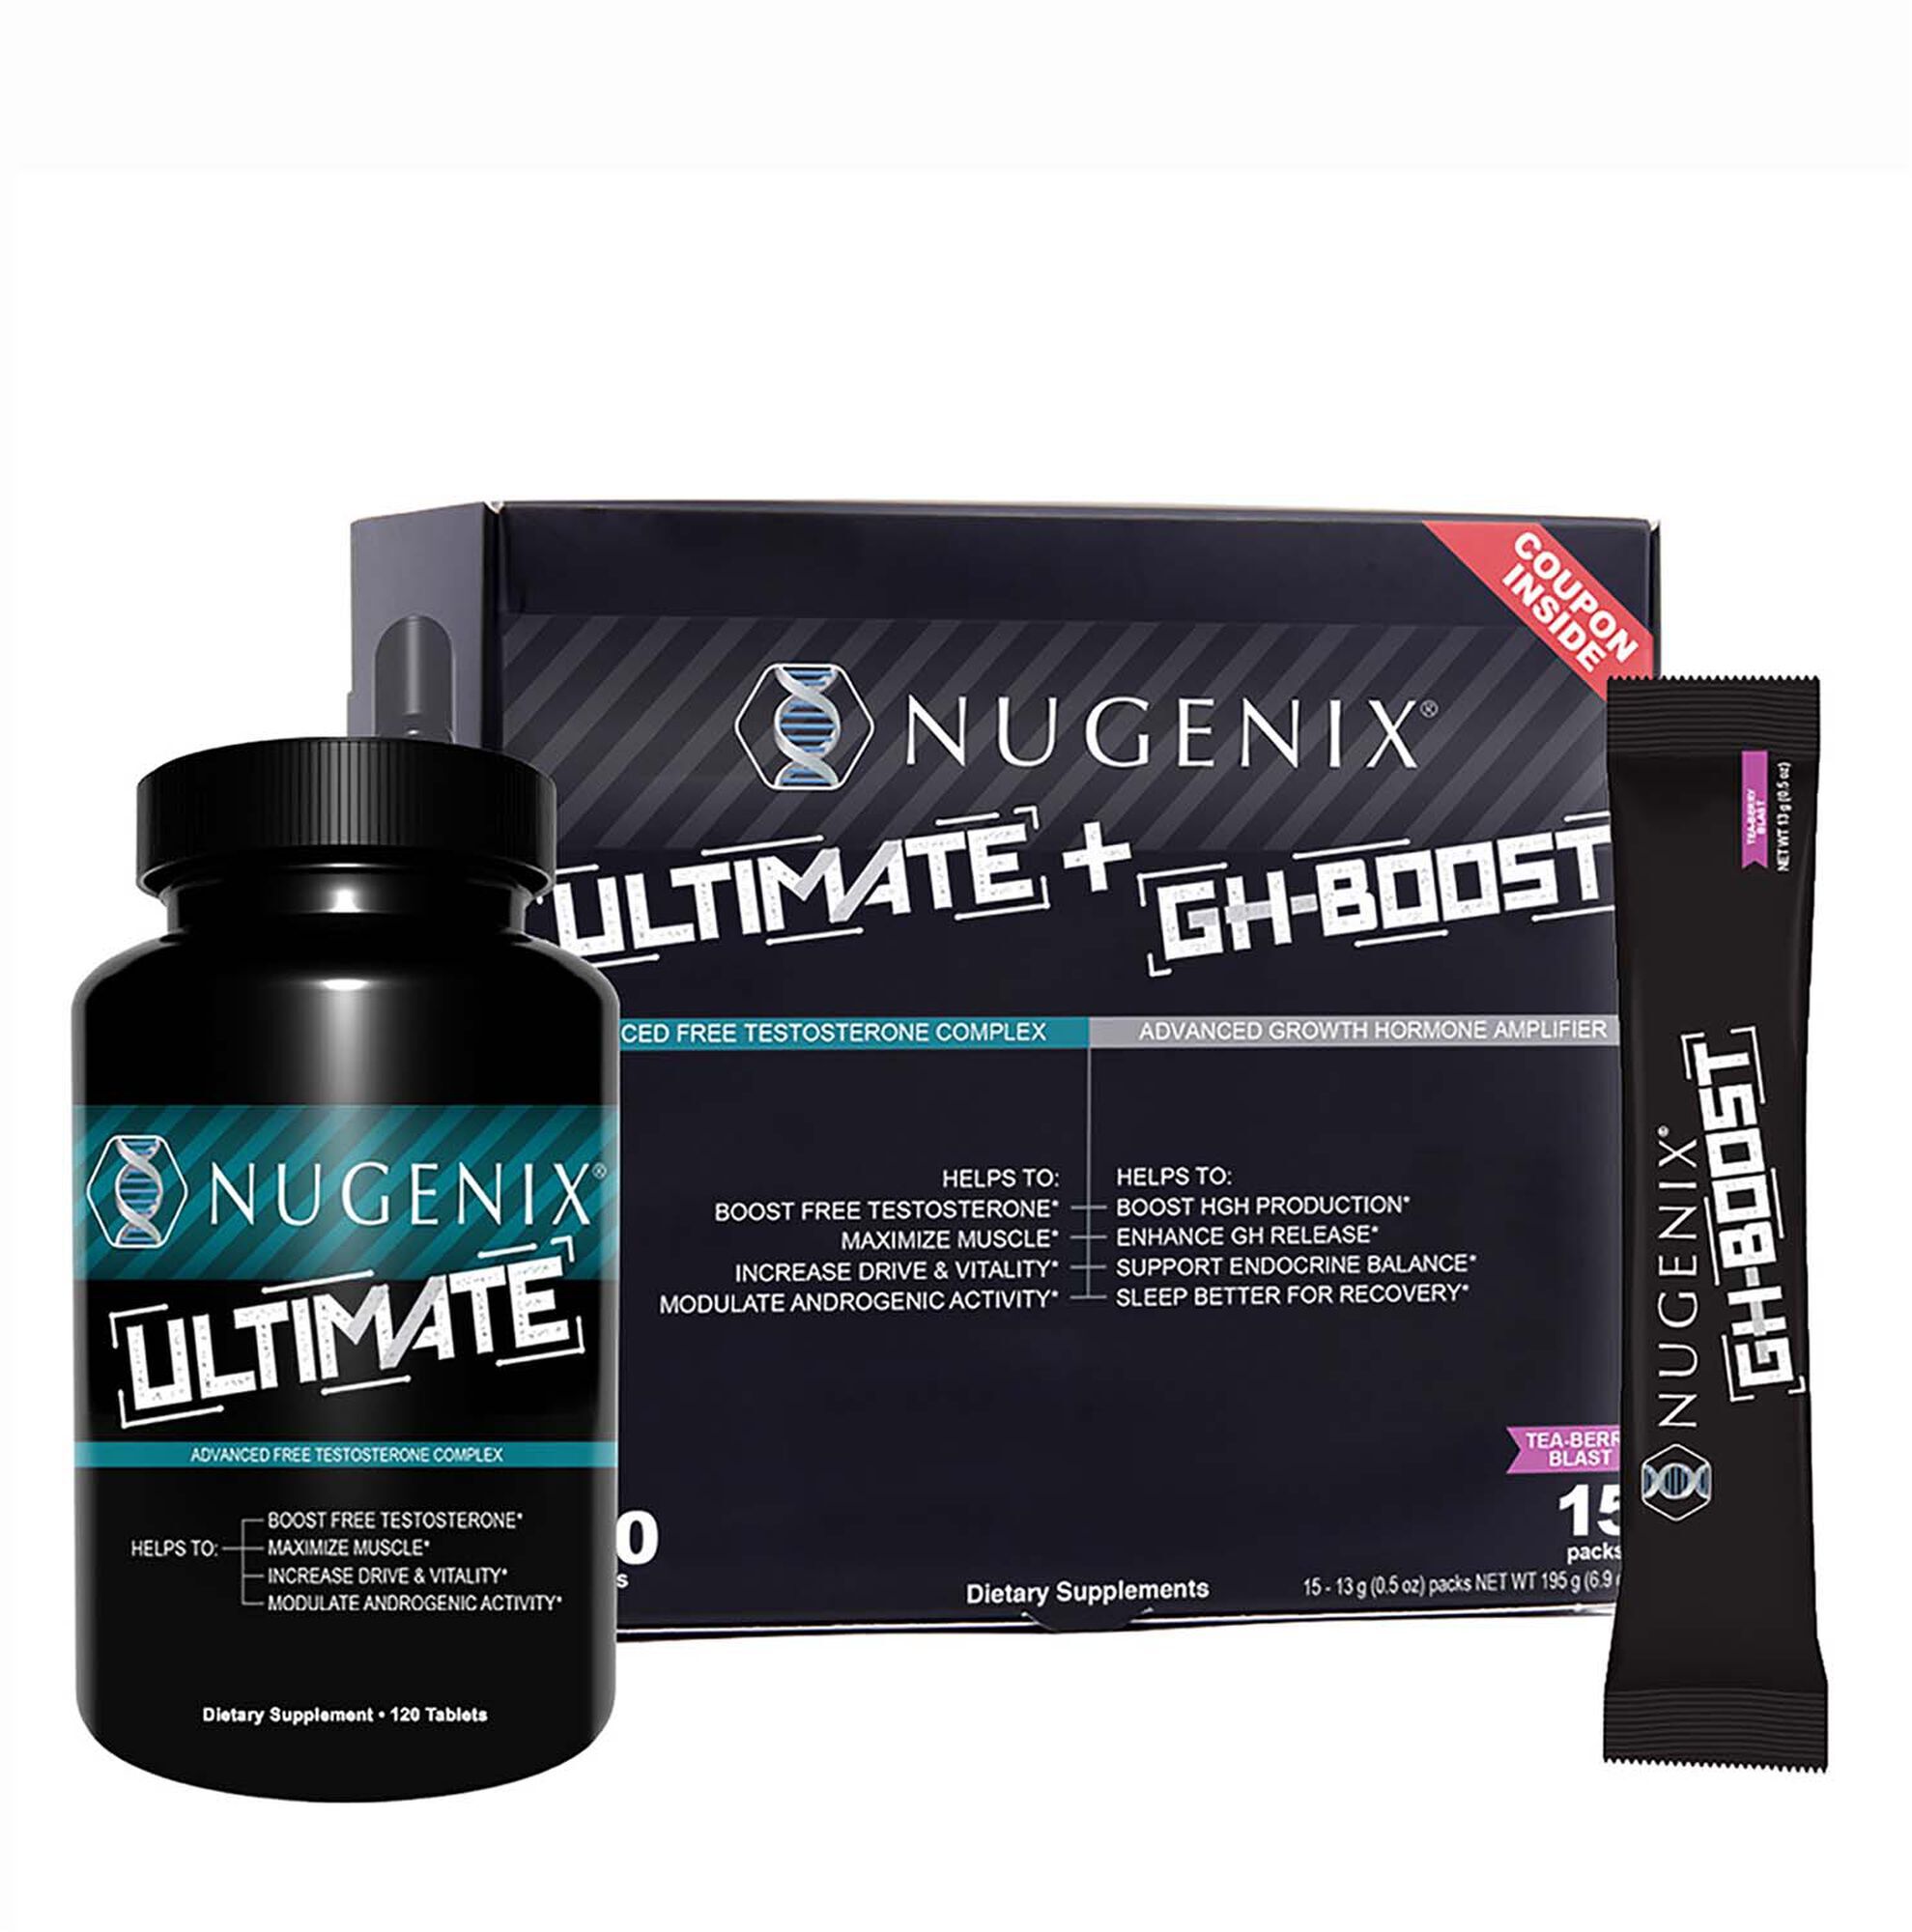 Nugenix Ultimate + GH-Boost 